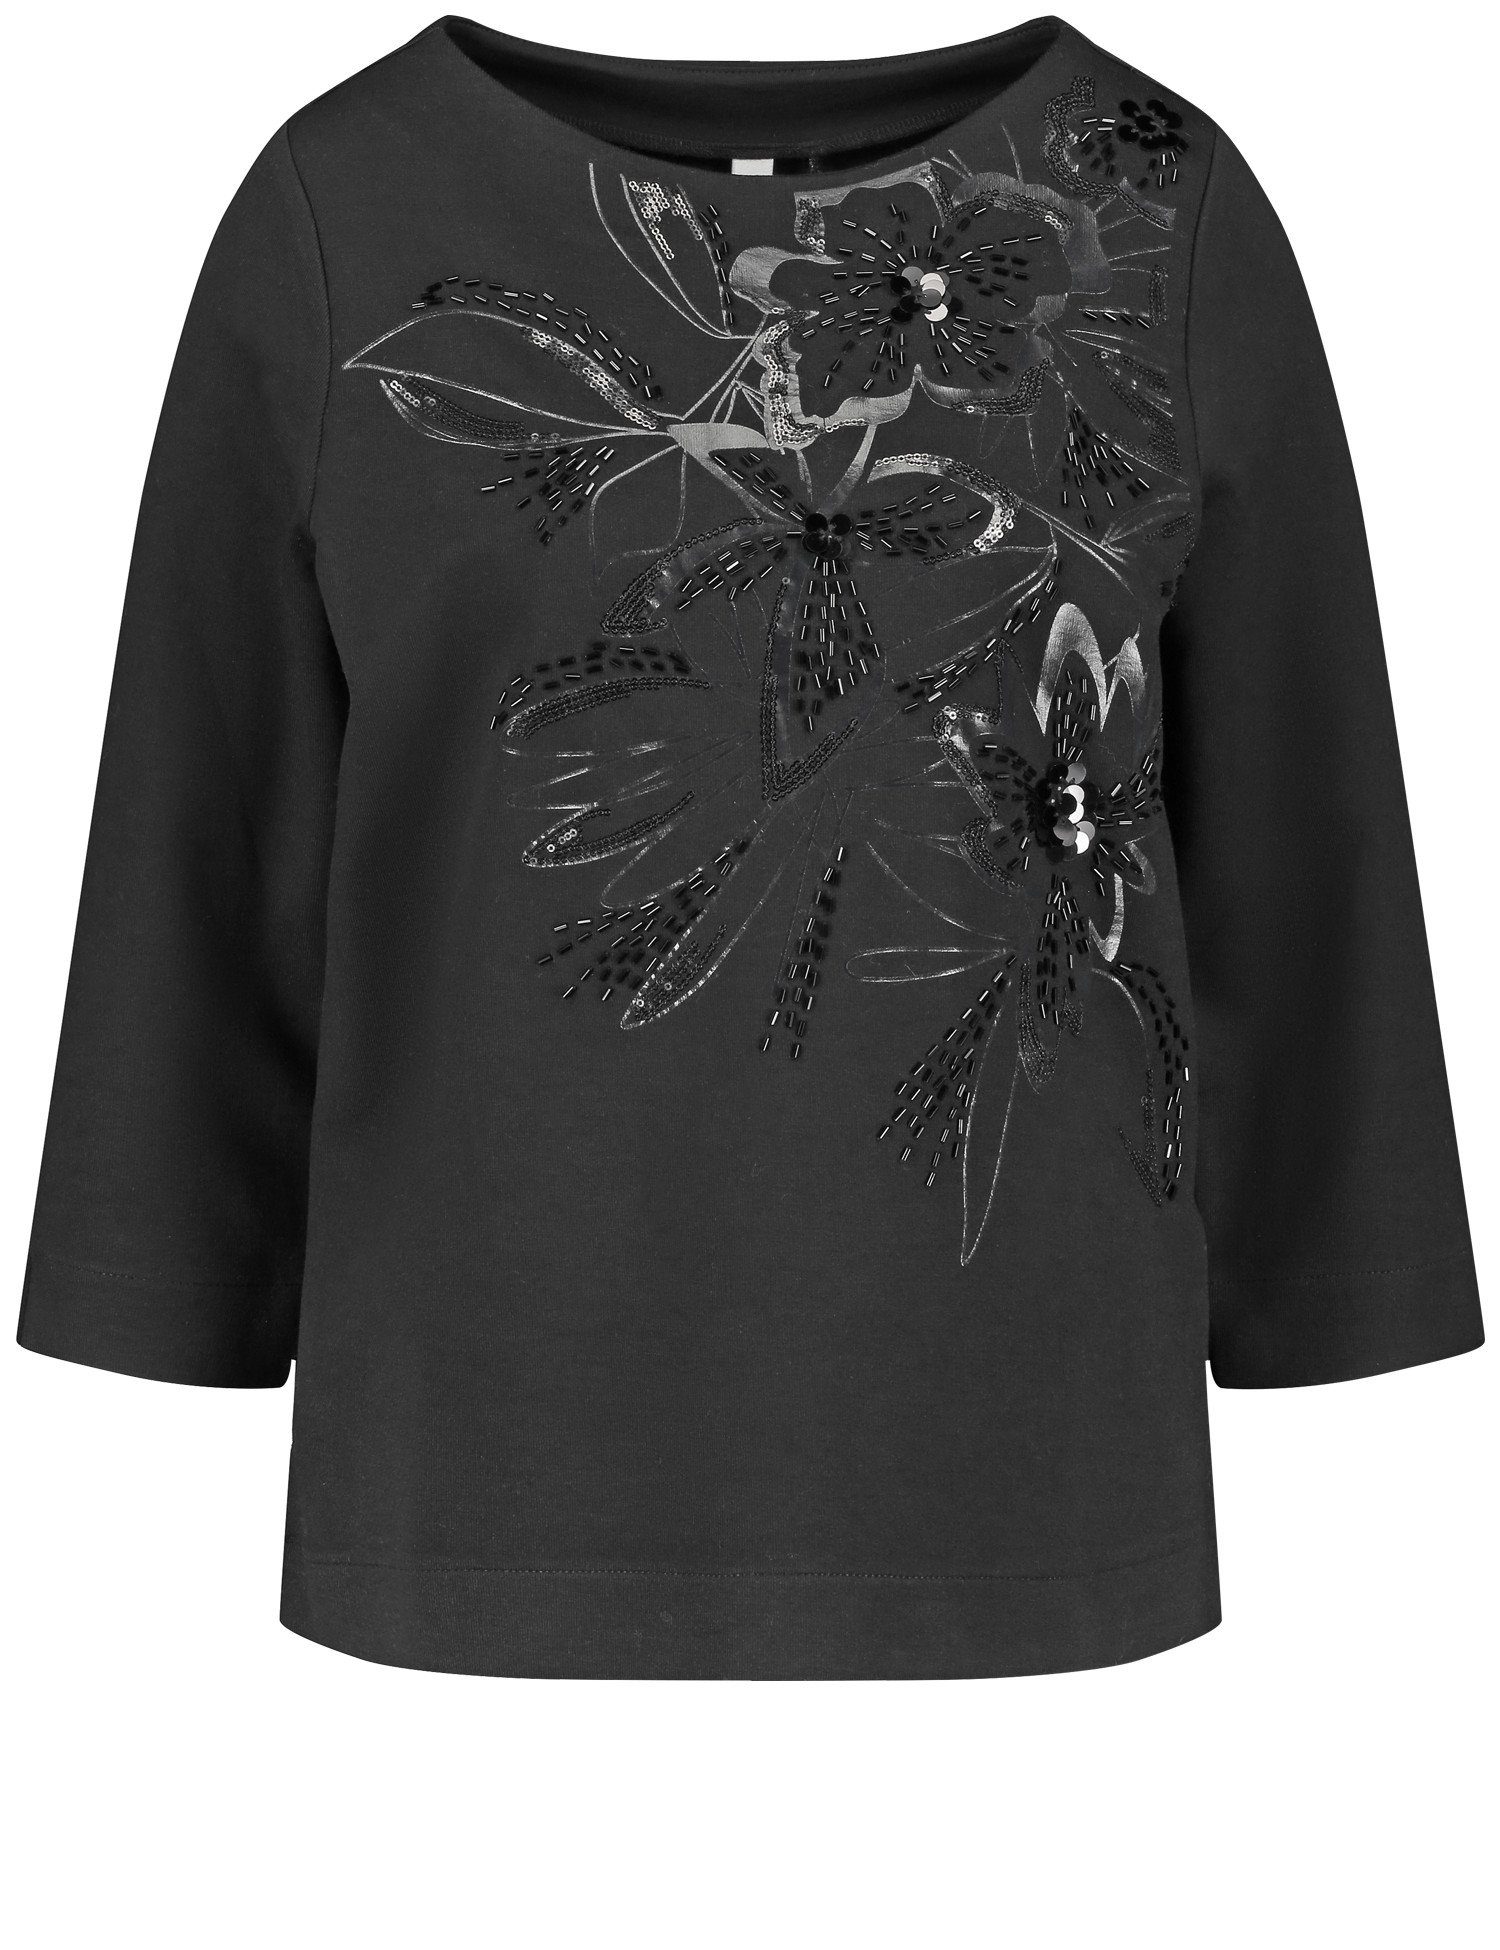 GERRY Pailletten Arm Dekor mit Ziersteinchen Shirt floralem aus WEBER und 3/4-Arm-Shirt 3/4